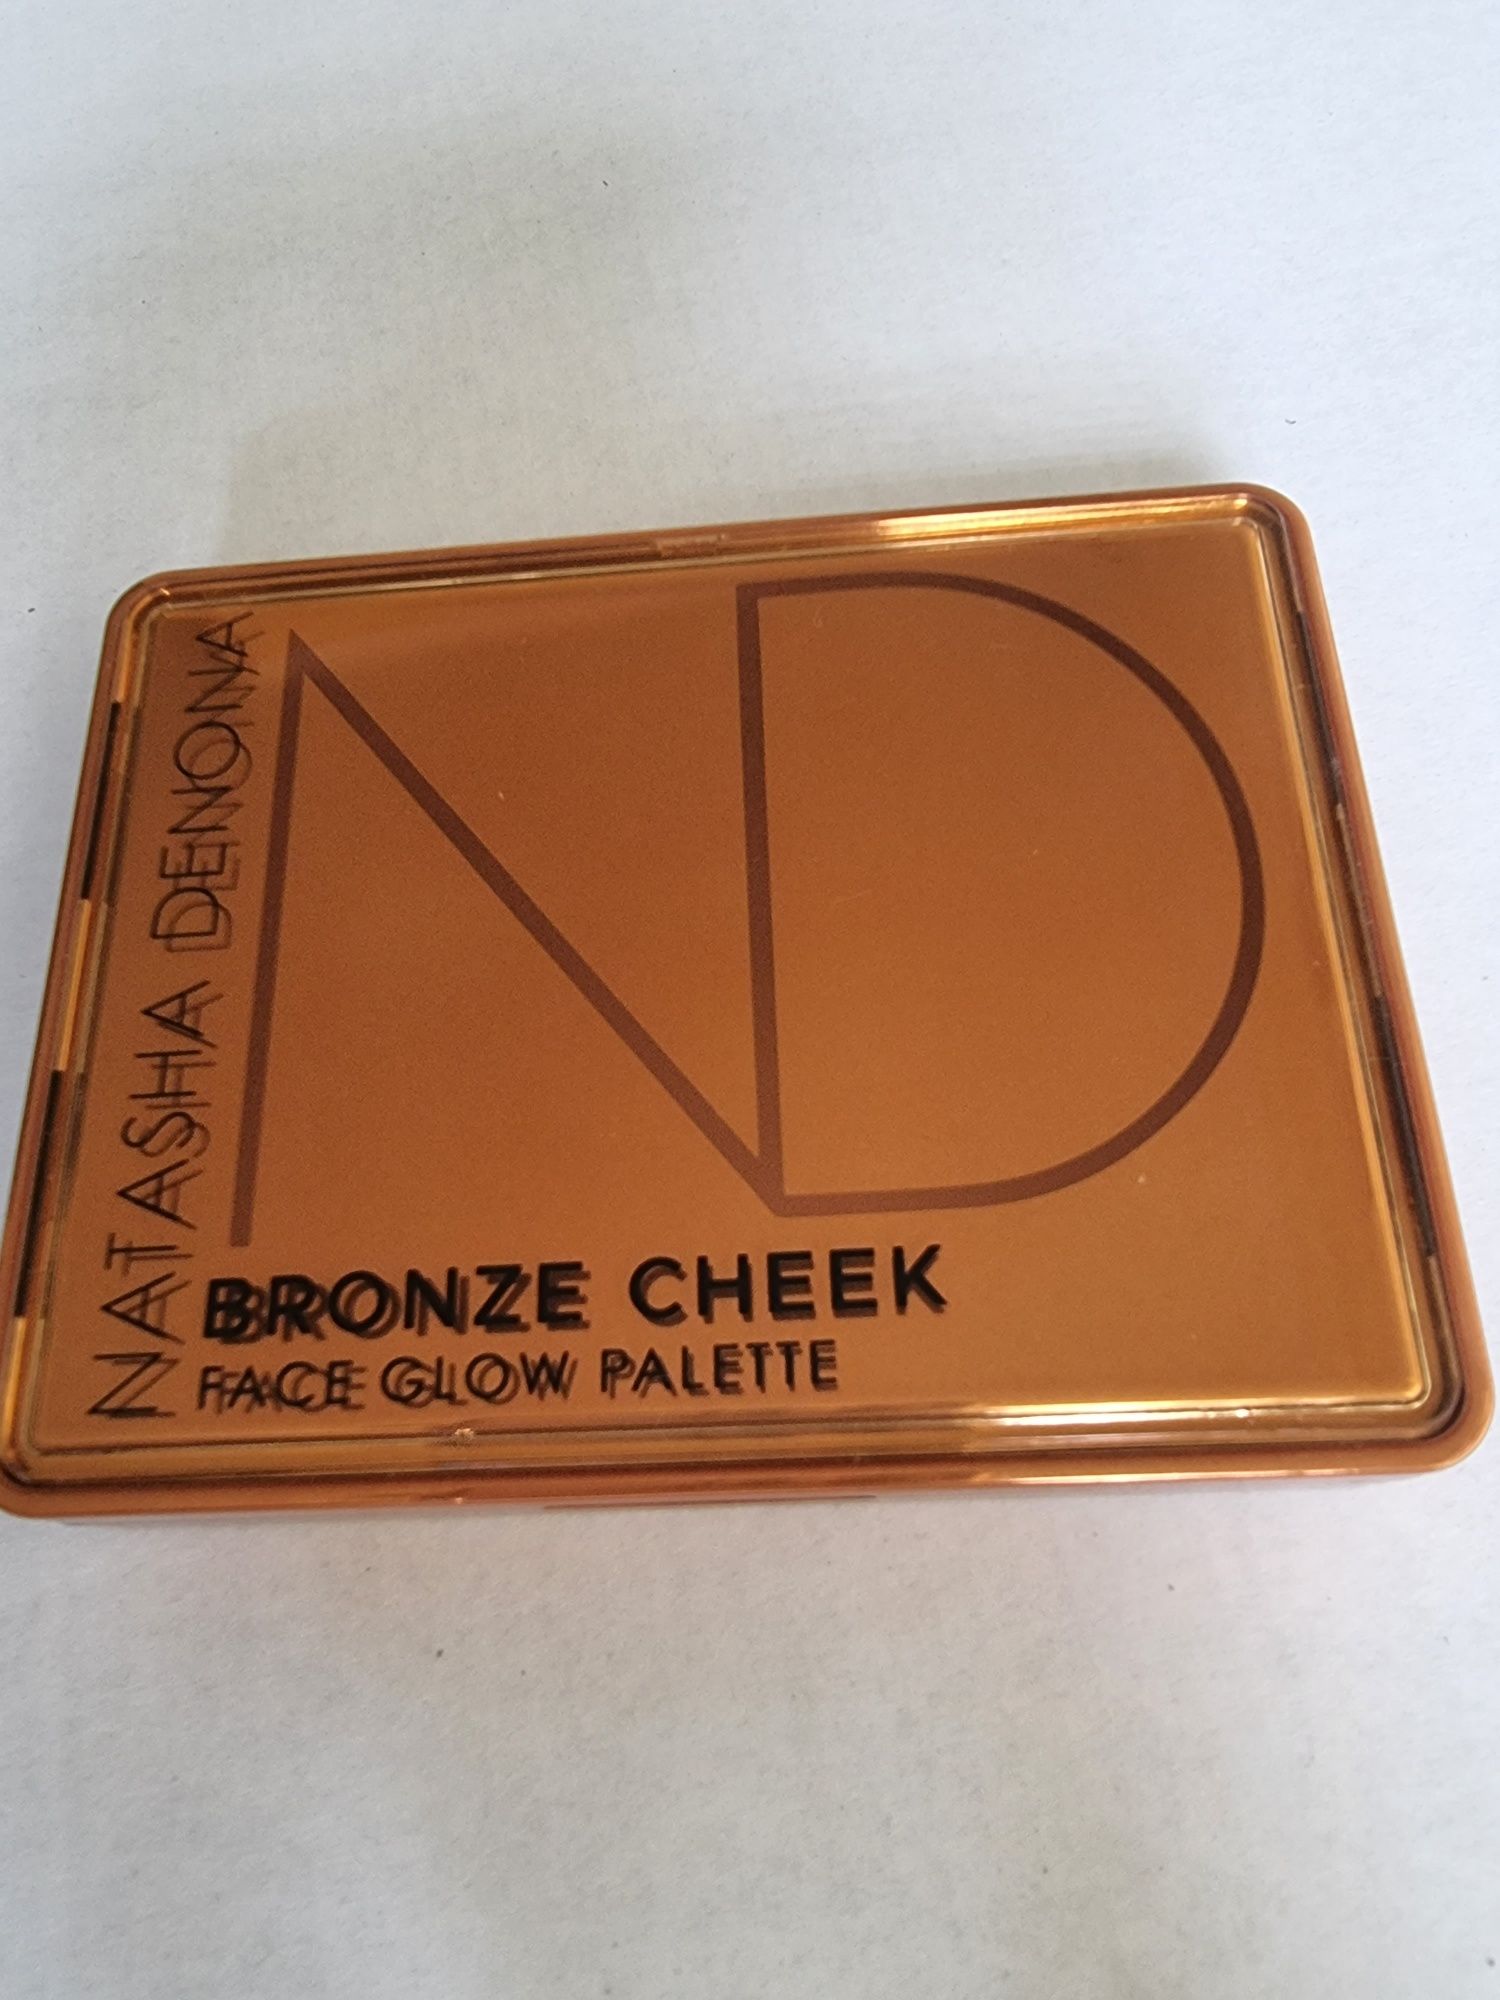 Natasha Denona Bronze Cheek Palette